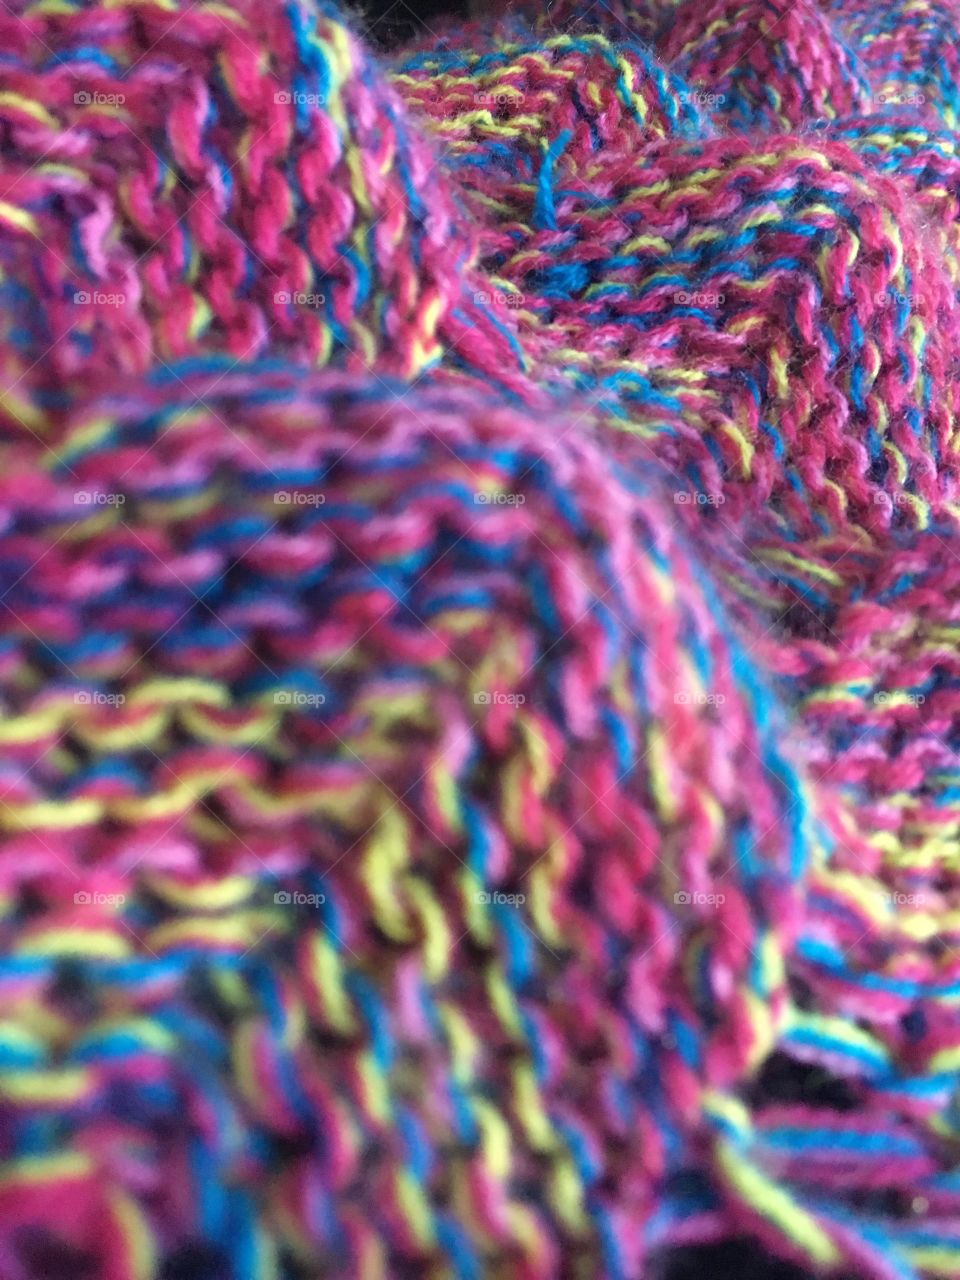 Knit mermaid blanket 